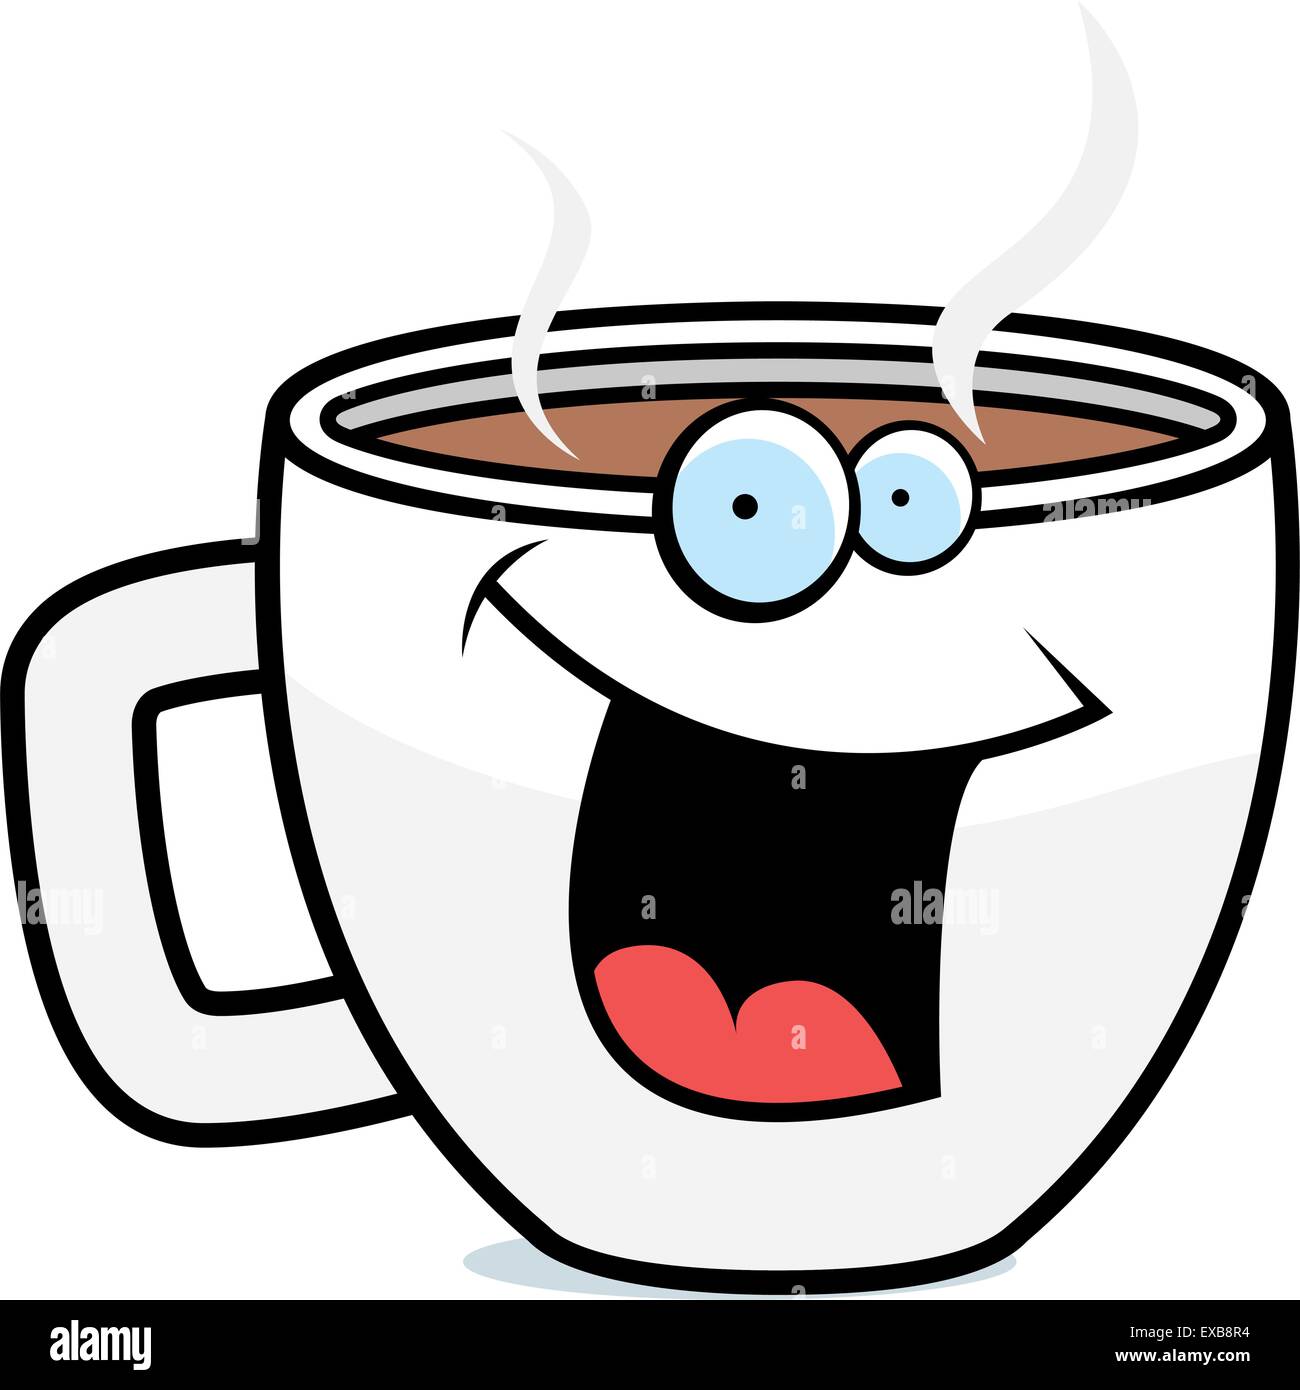 https://c8.alamy.com/comp/EXB8R4/a-cartoon-cup-of-coffee-smiling-and-happy-EXB8R4.jpg